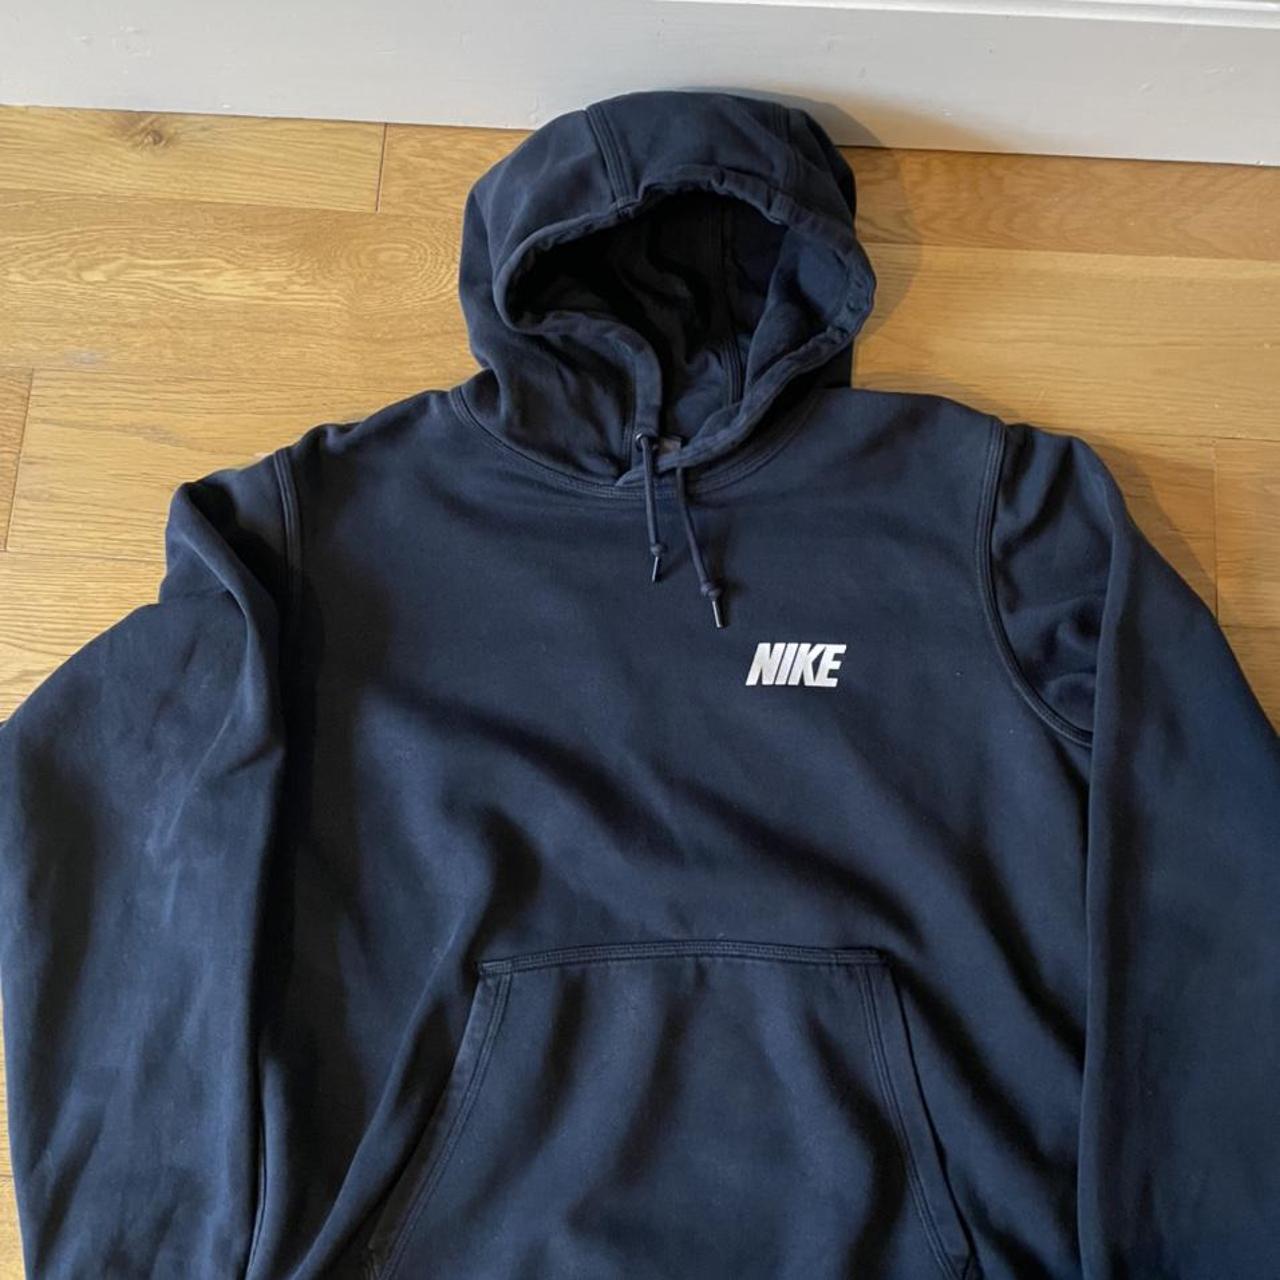 Vintage Navy Nike hoodie Free UK shipping Size M... - Depop